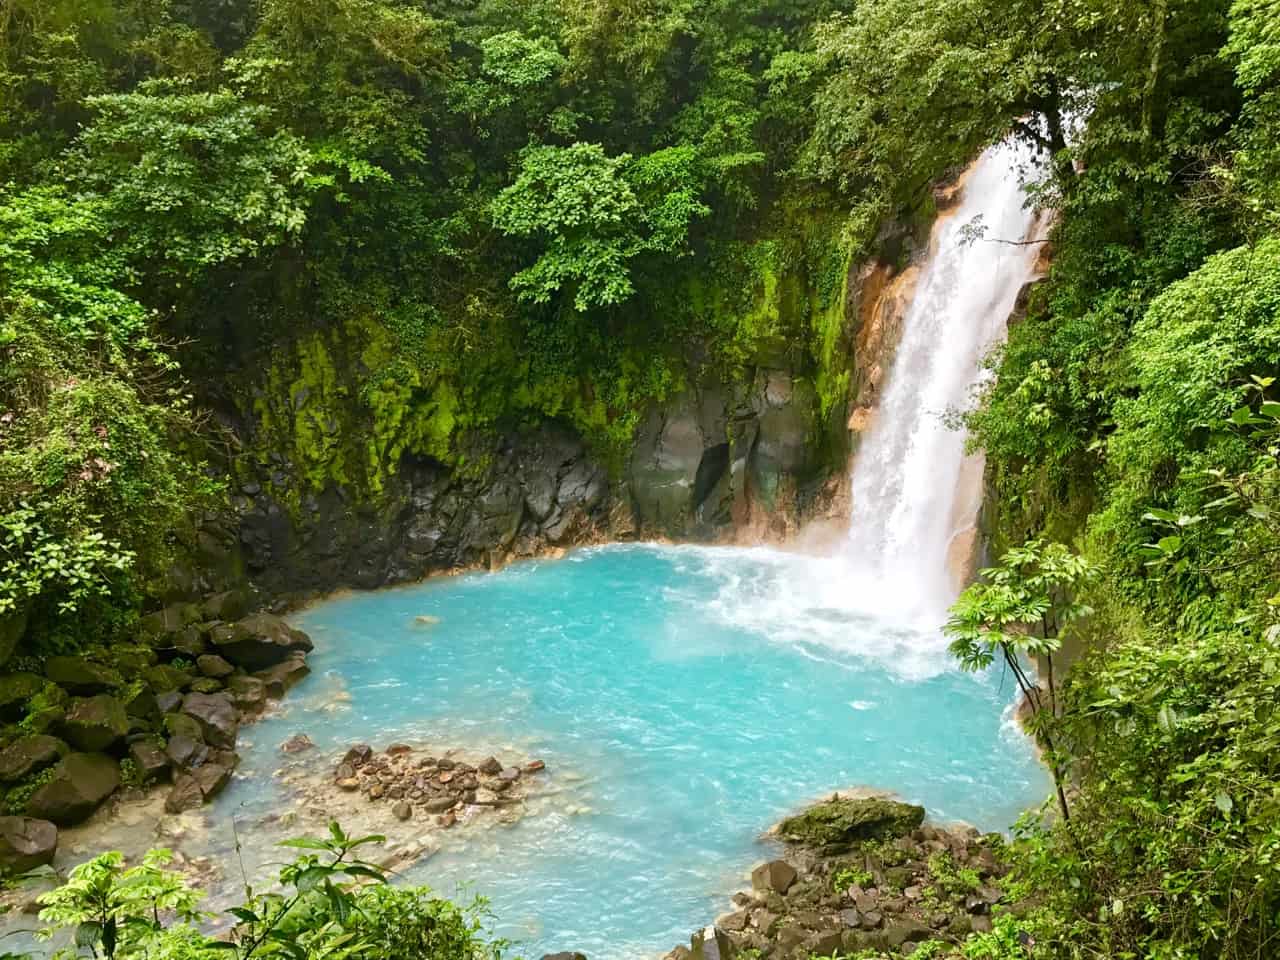  La cascade de Rio Celeste plonge dans une piscine bleu laiteux au Parc national du volcan Tenorio, l'un des parcs les moins visités du Costa Rica.